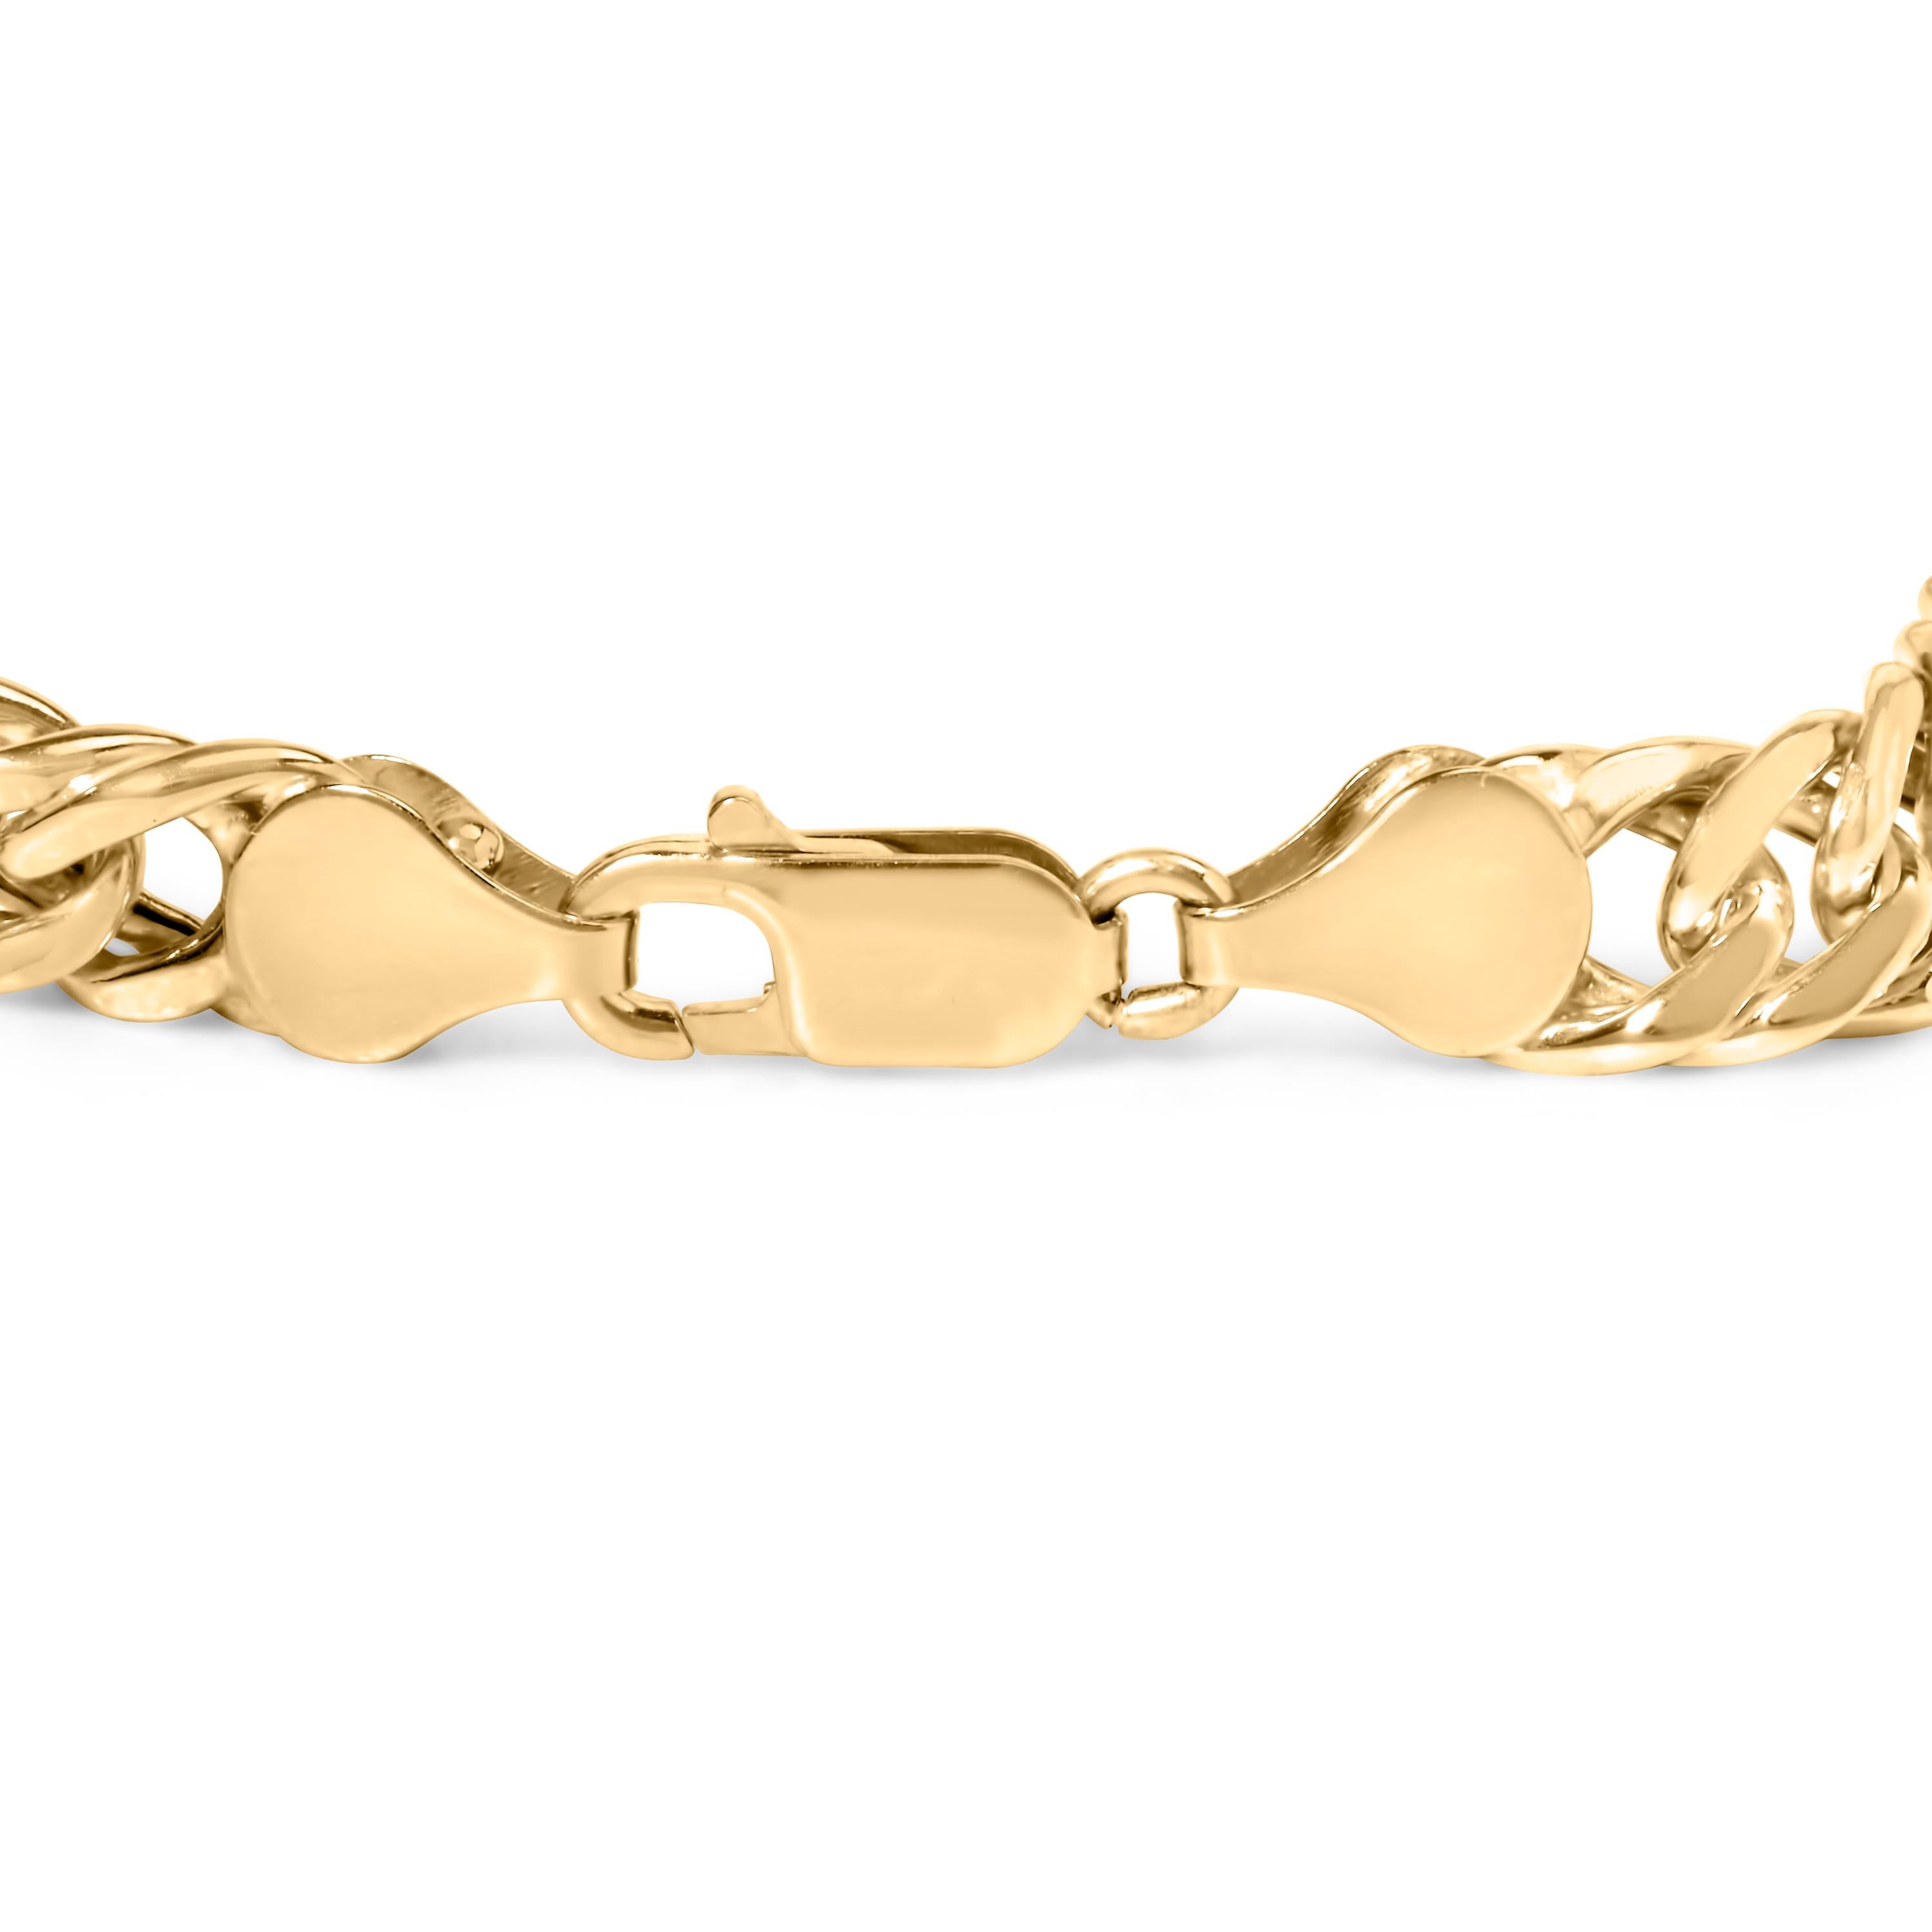 Offrez-vous le luxe avec notre exquis bracelet à maillons cubains en or jaune 10K, une pièce intemporelle qui respire l'élégance et la sophistication. Fabriqué en or jaune 10K étincelant, ce bracelet témoigne d'un style raffiné et d'un savoir-faire